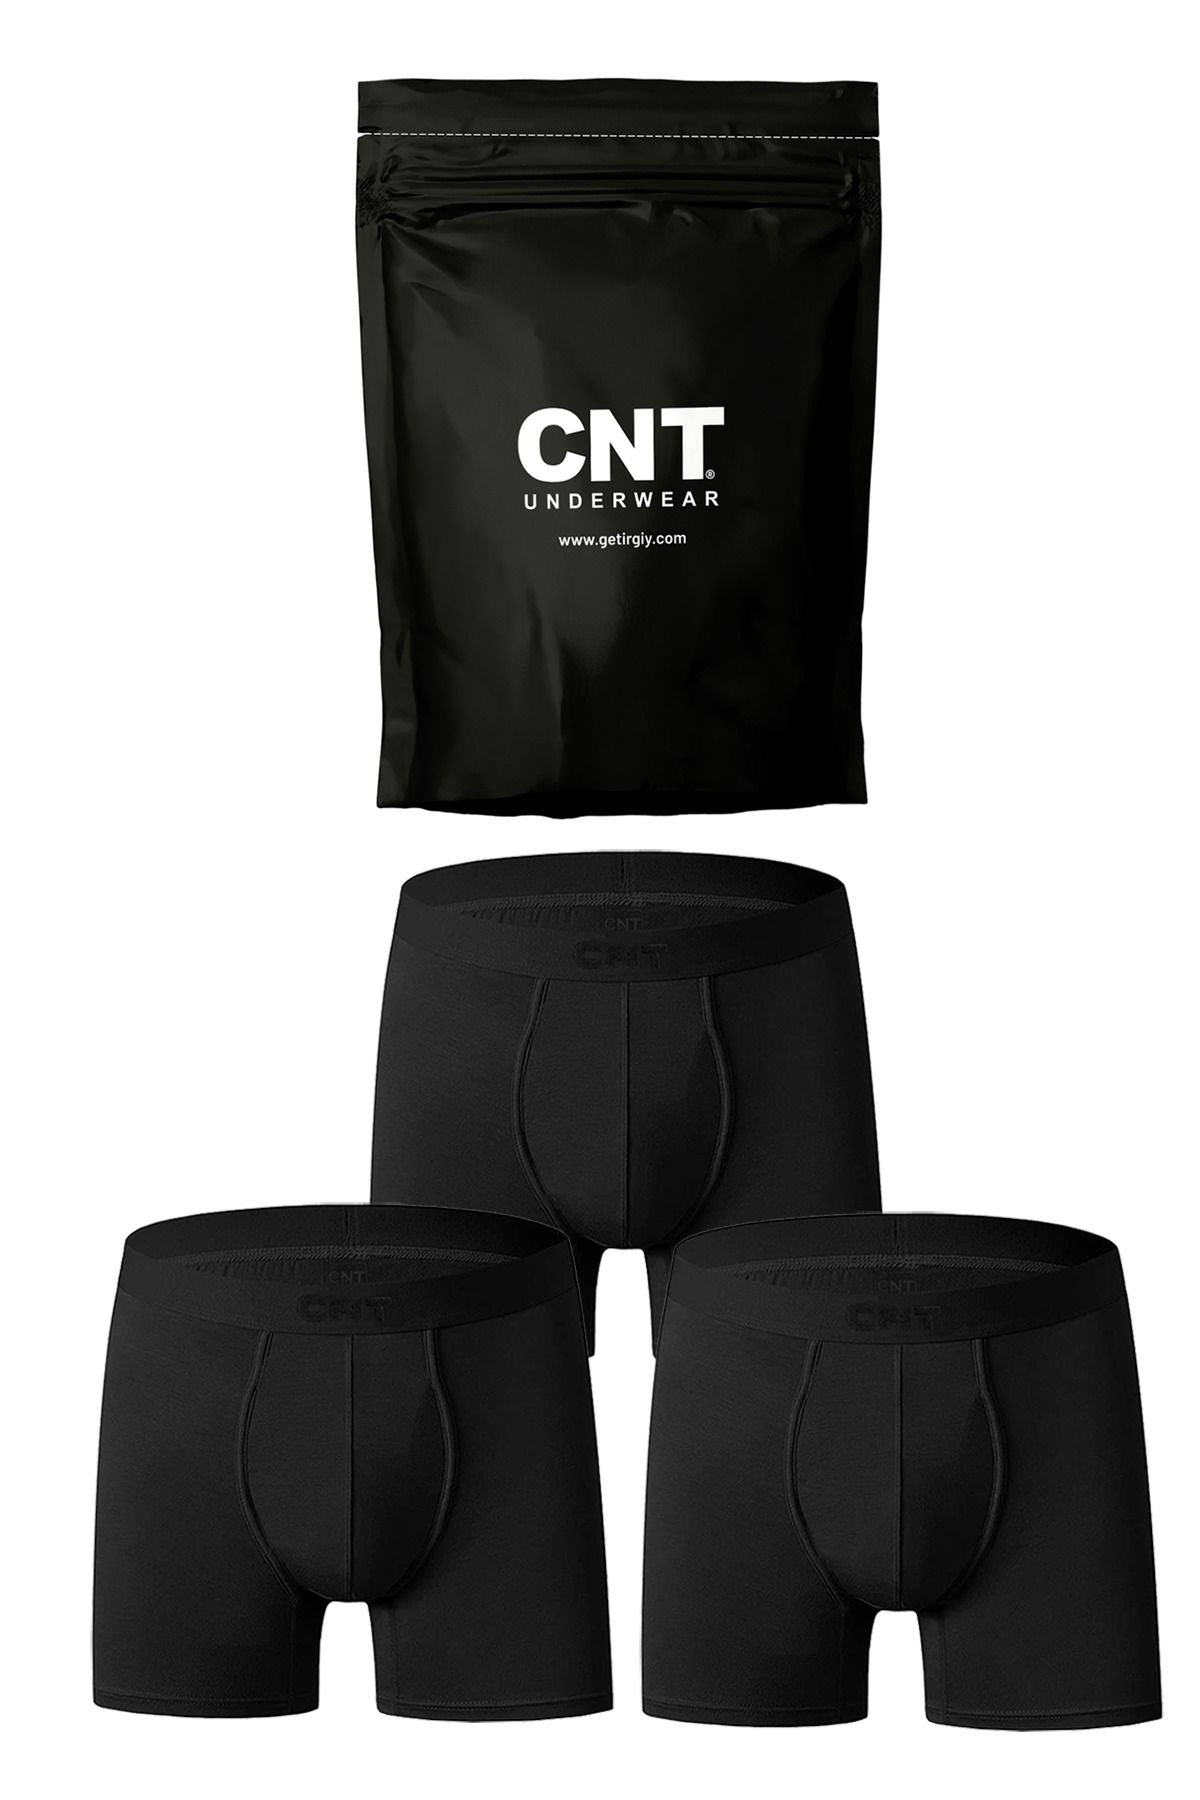 CNT Erkek 3'lü Boxer 1. Sınıf Kumaş Premium Paket Özel Dizayn. Düz Likralı Boxer Şort Çeyizlik Hediyelik